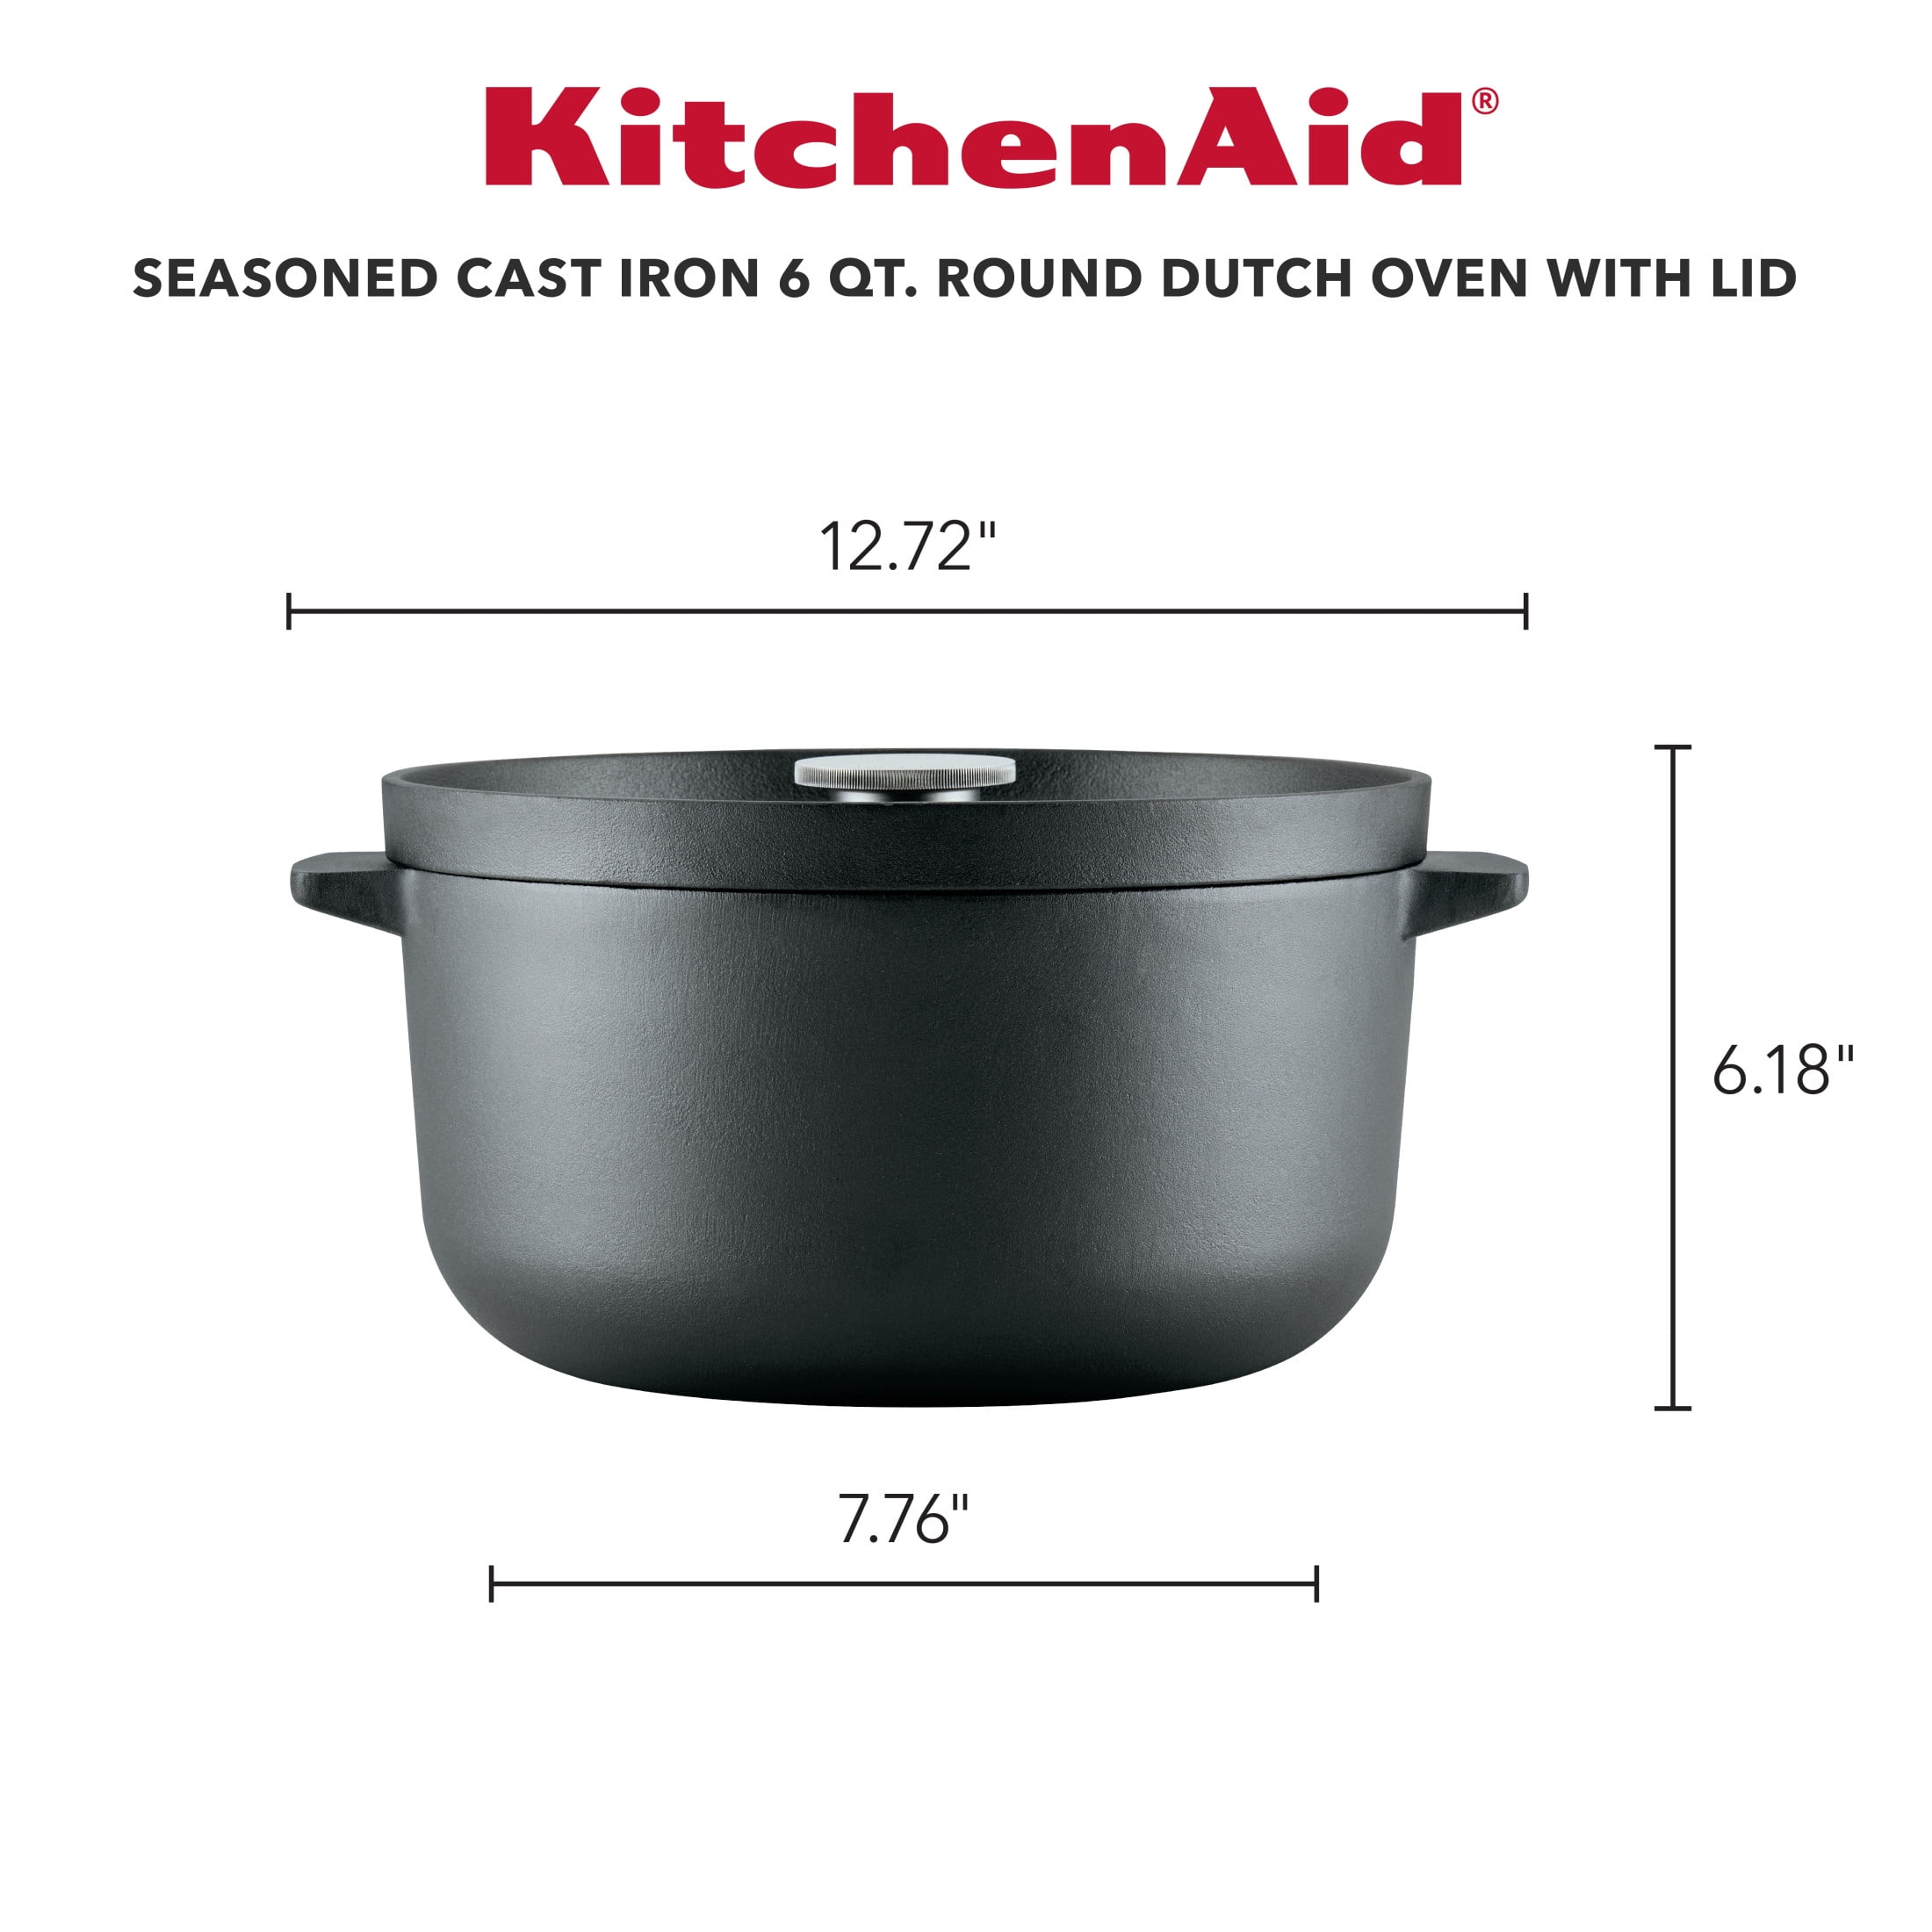 KitchenAid Enameled Cast Iron Dutch Oven/Casserole, 6 Quart, Pistachio